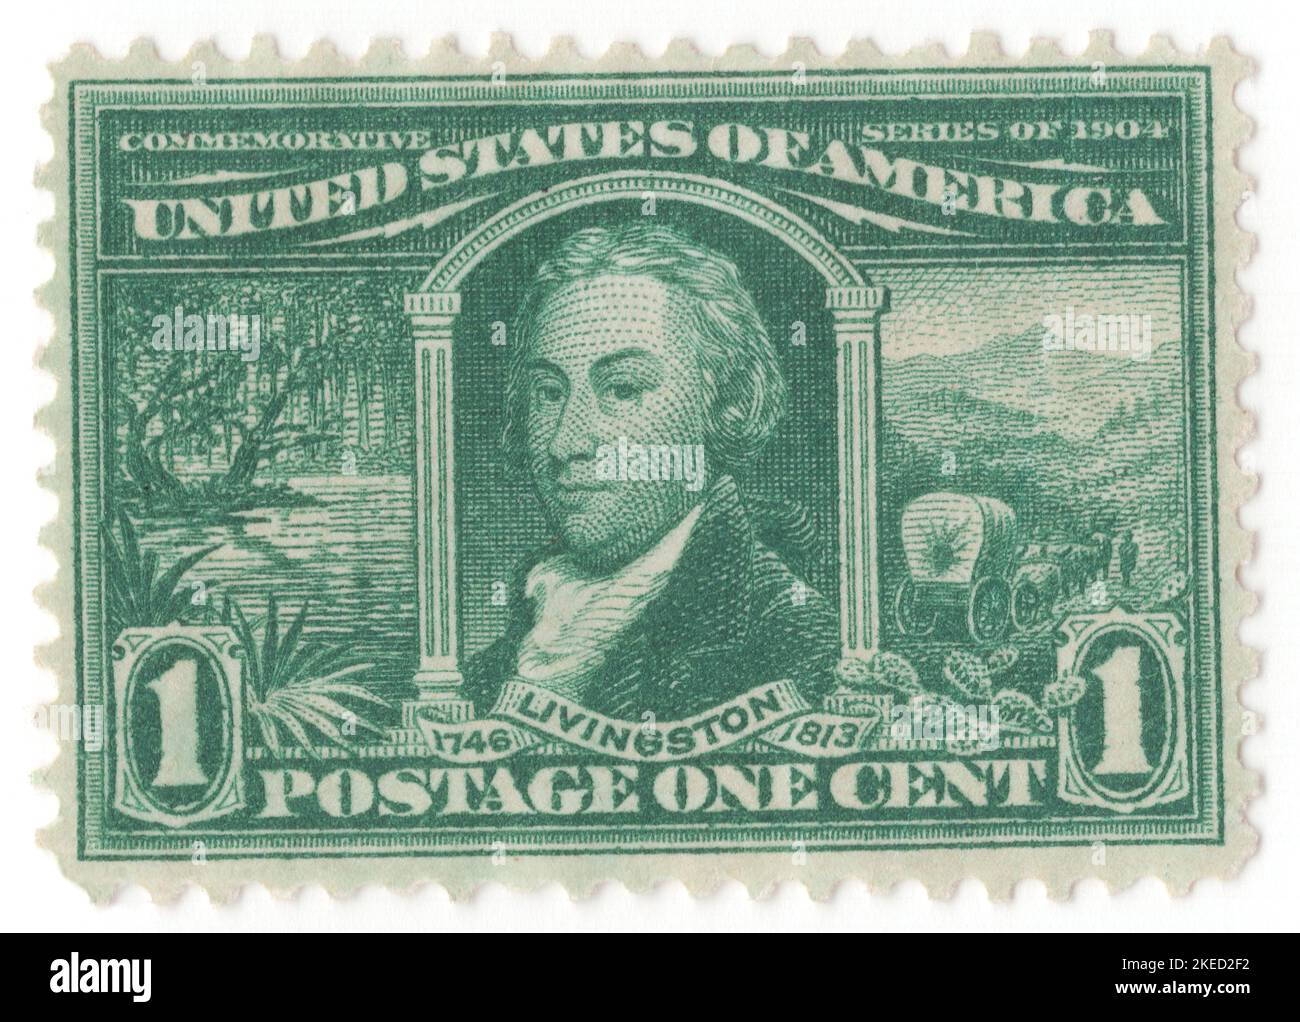 Etats-Unis - 1904 30 avril : timbre-poste vert de 1 cents représentant le portrait de Robert Lucien Livingston. Exposition d'achat en Louisiane. Avocat, homme politique et diplomate américain de New York, ainsi que père fondateur des États-Unis. Il était connu sous le nom de « chancelier », après le haut bureau juridique de l'État de New York qu'il a occupé pendant 25 ans. Il a été membre du Comité des cinq qui a rédigé la Déclaration d'indépendance, avec Thomas Jefferson, Benjamin Franklin, John Adams et Roger Sherman. Livingston a prêté serment à George Washington Banque D'Images